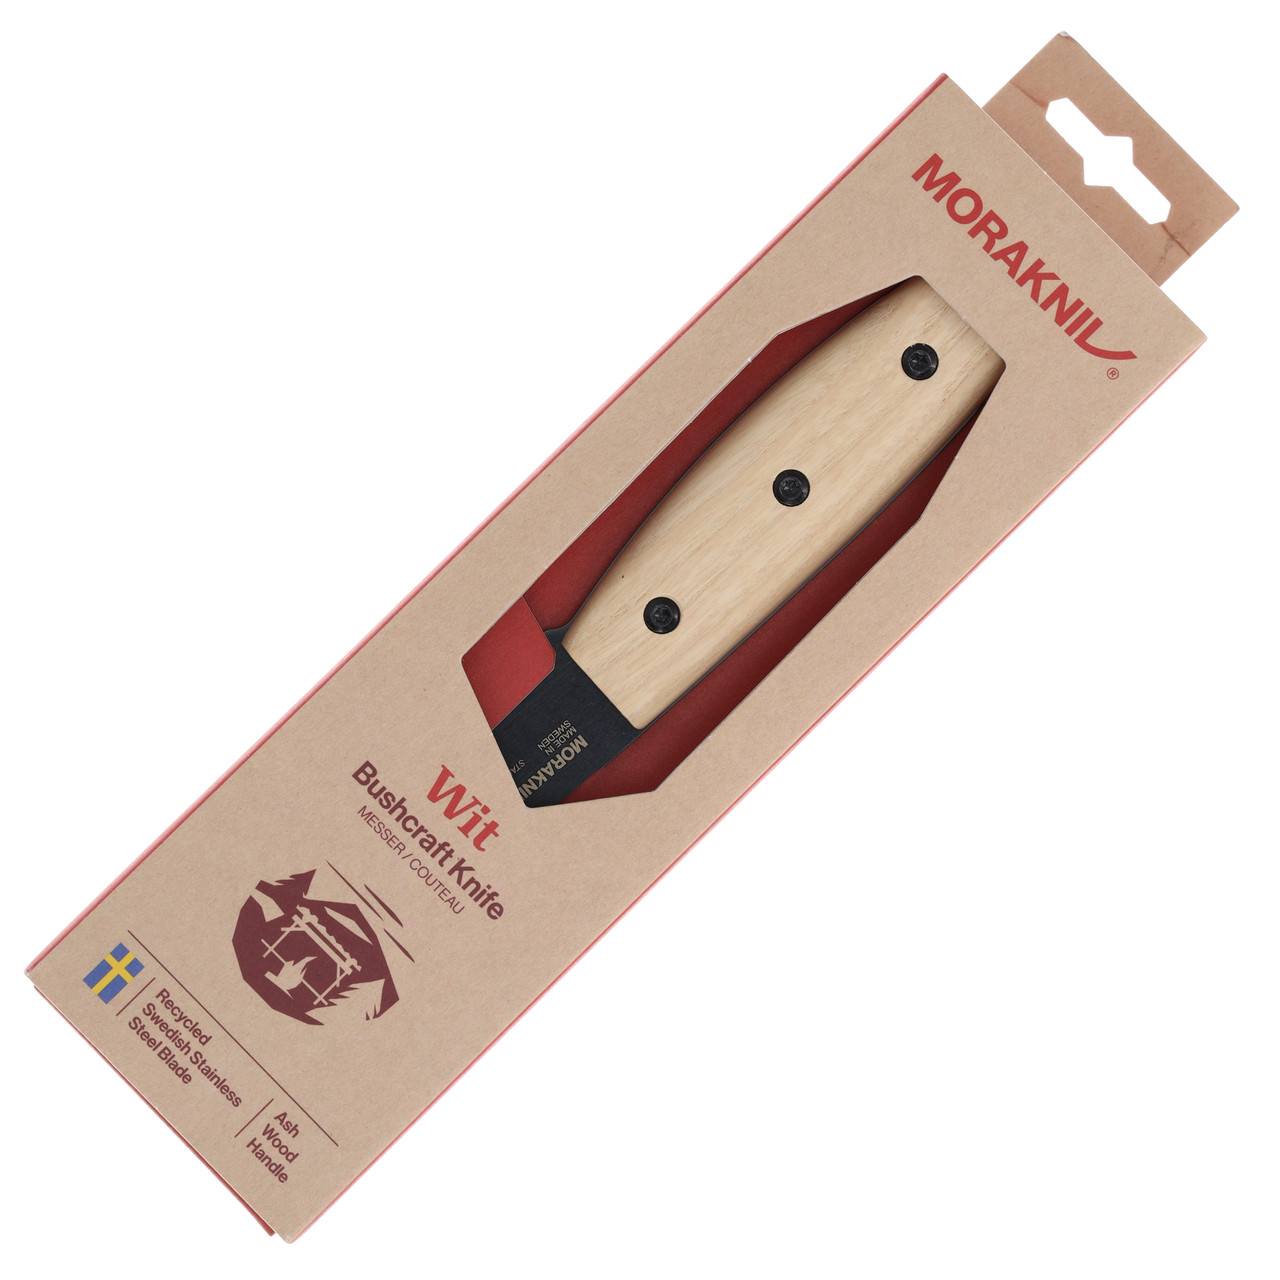 MoraKniv - Wit - Black Blade and Ash Wood - 14084 - knife